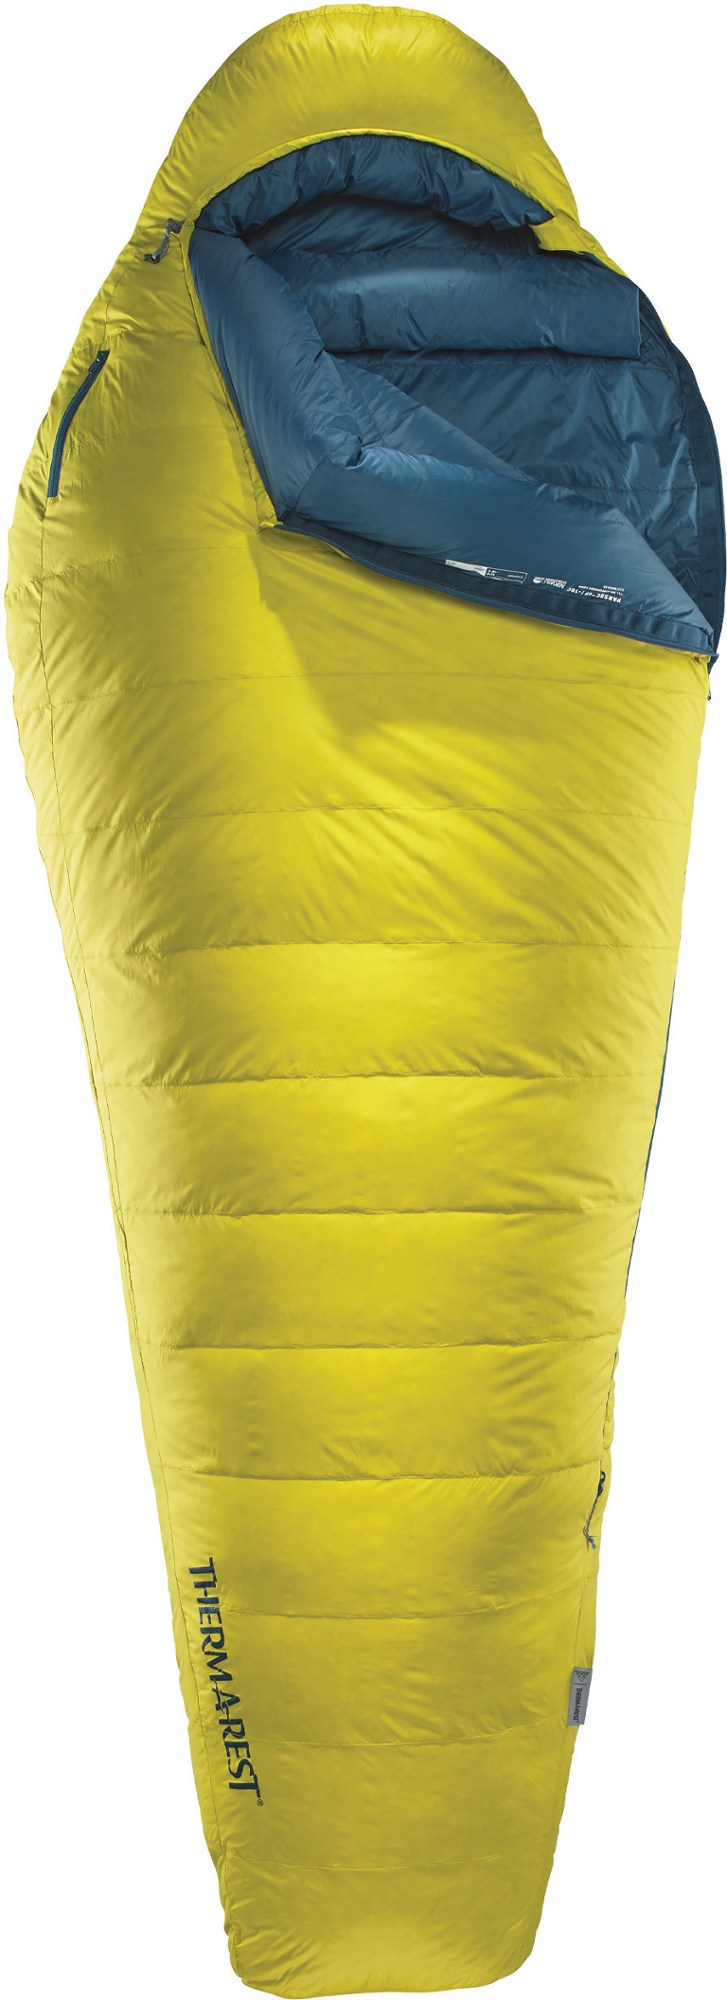 Спальный мешок Парсек 0 Therm-a-Rest, желтый